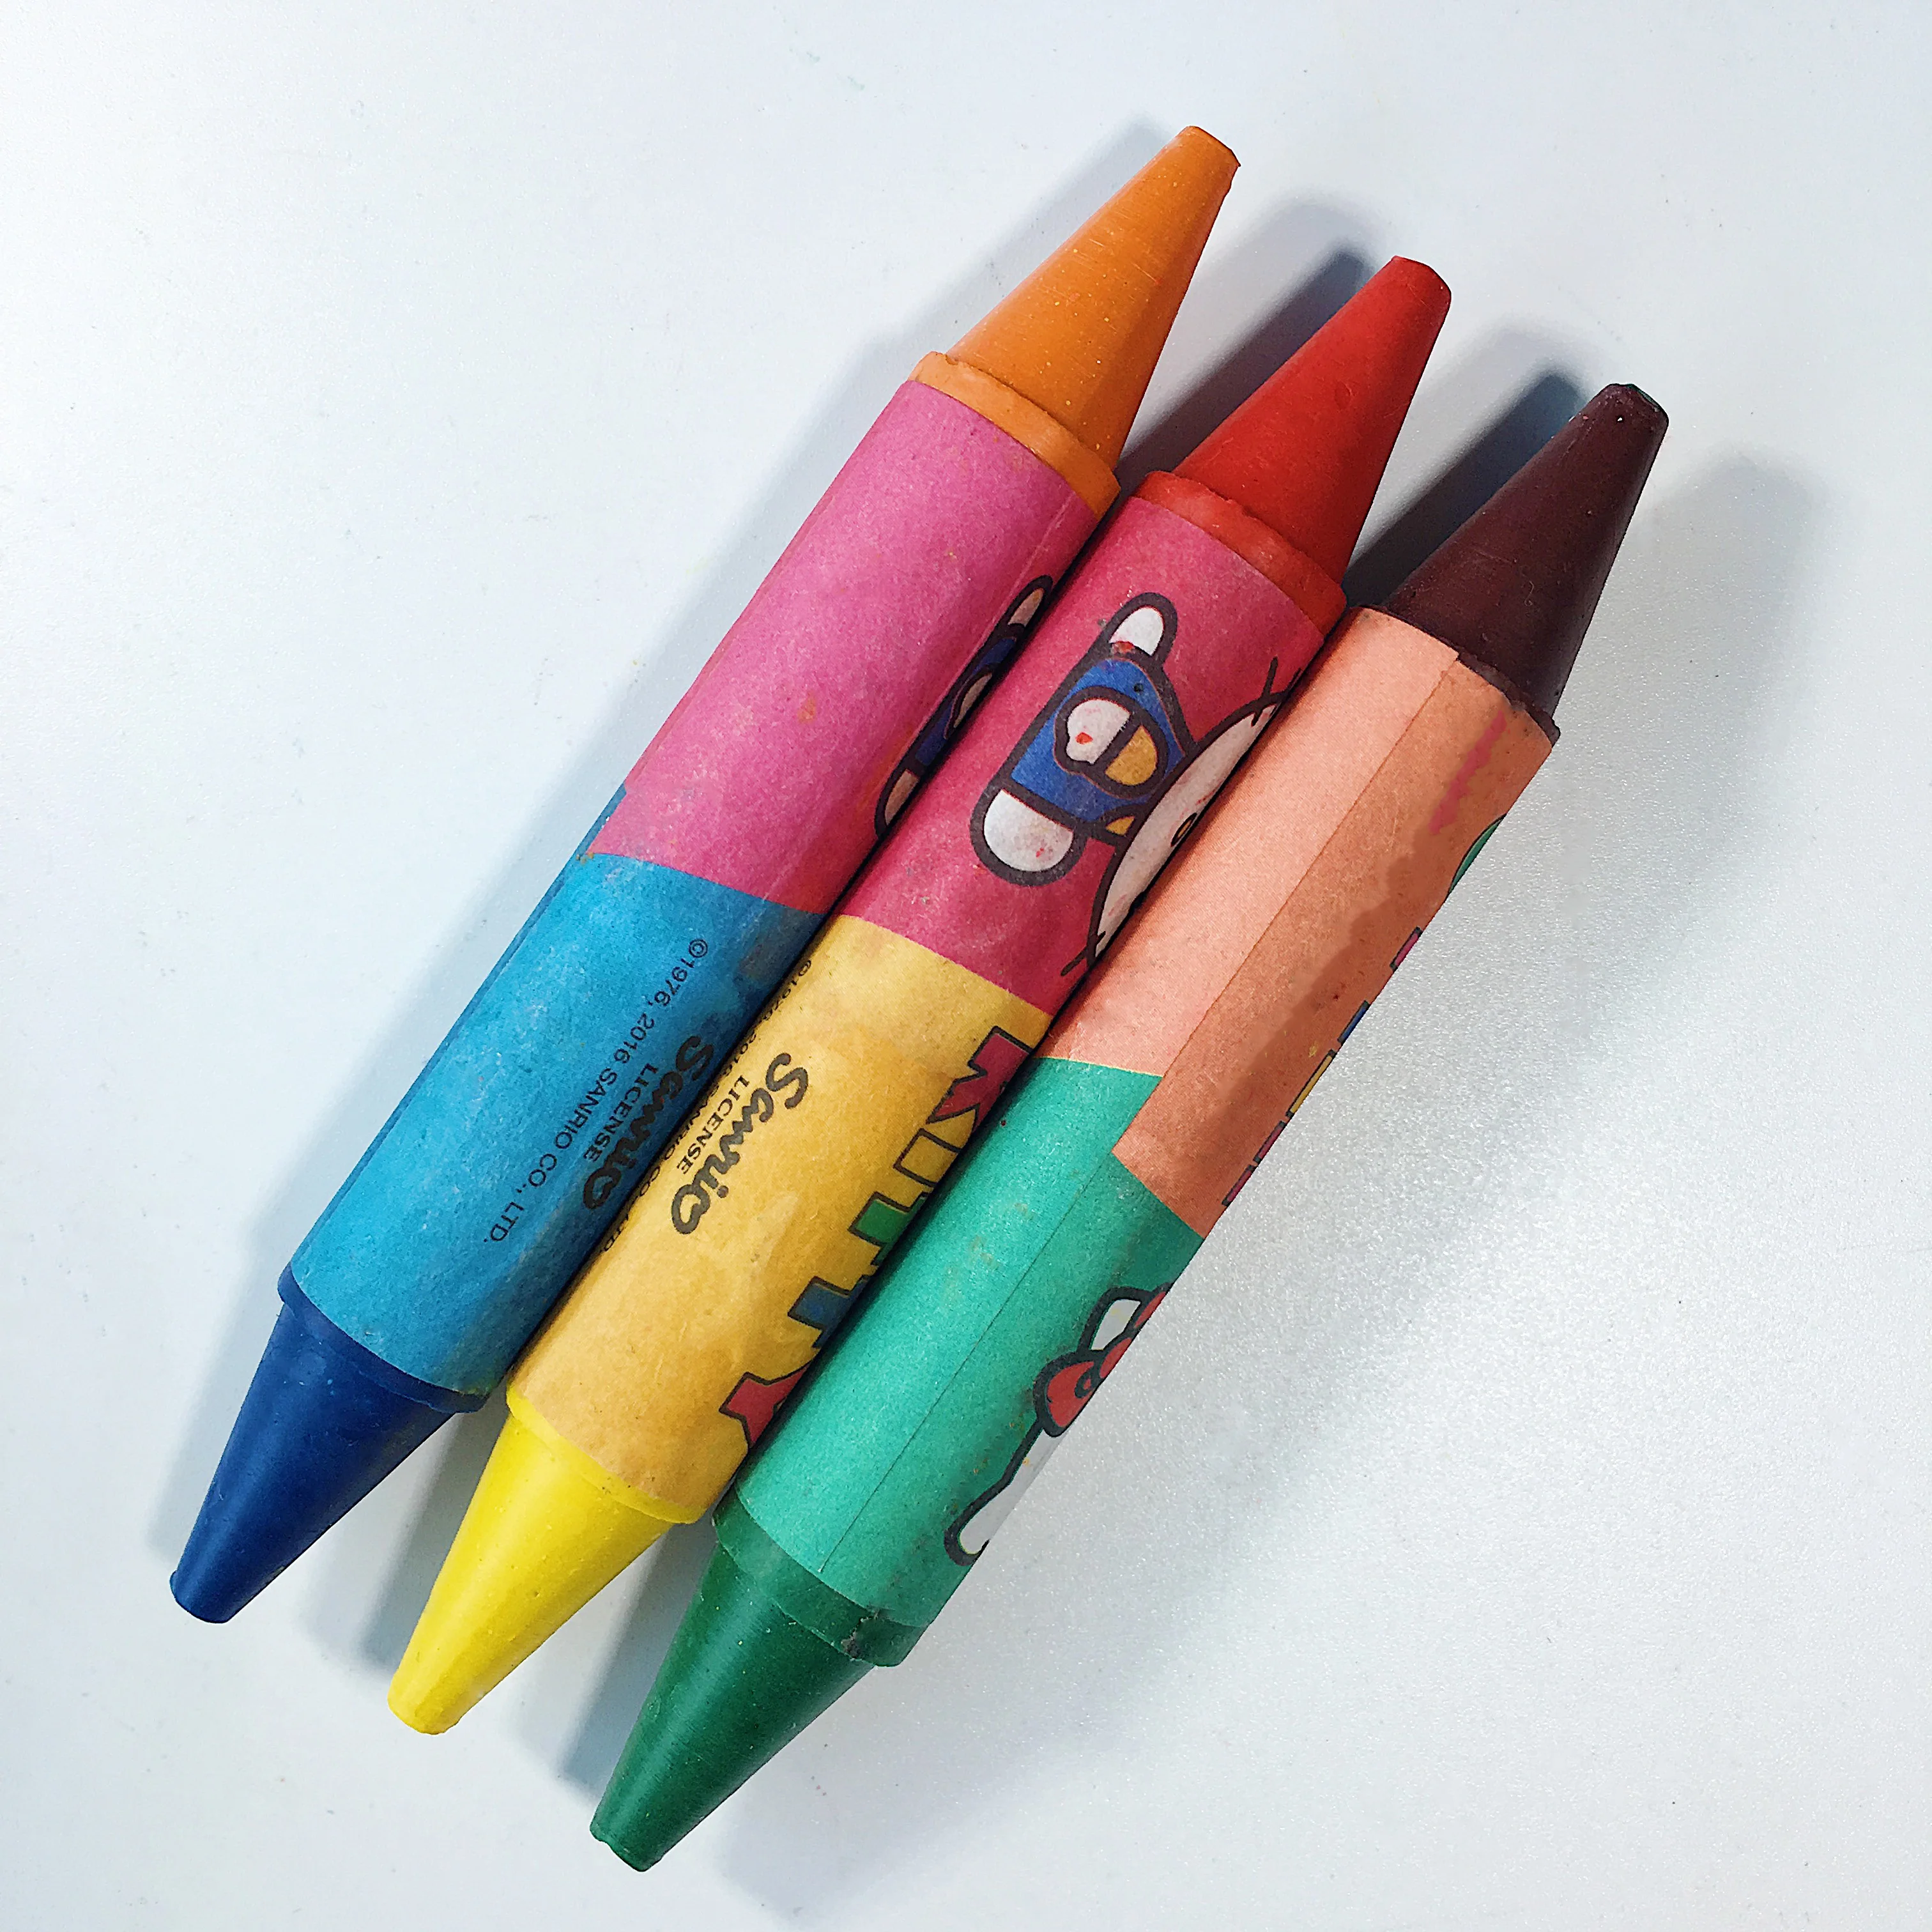 彩色蜡笔crayon发音图片